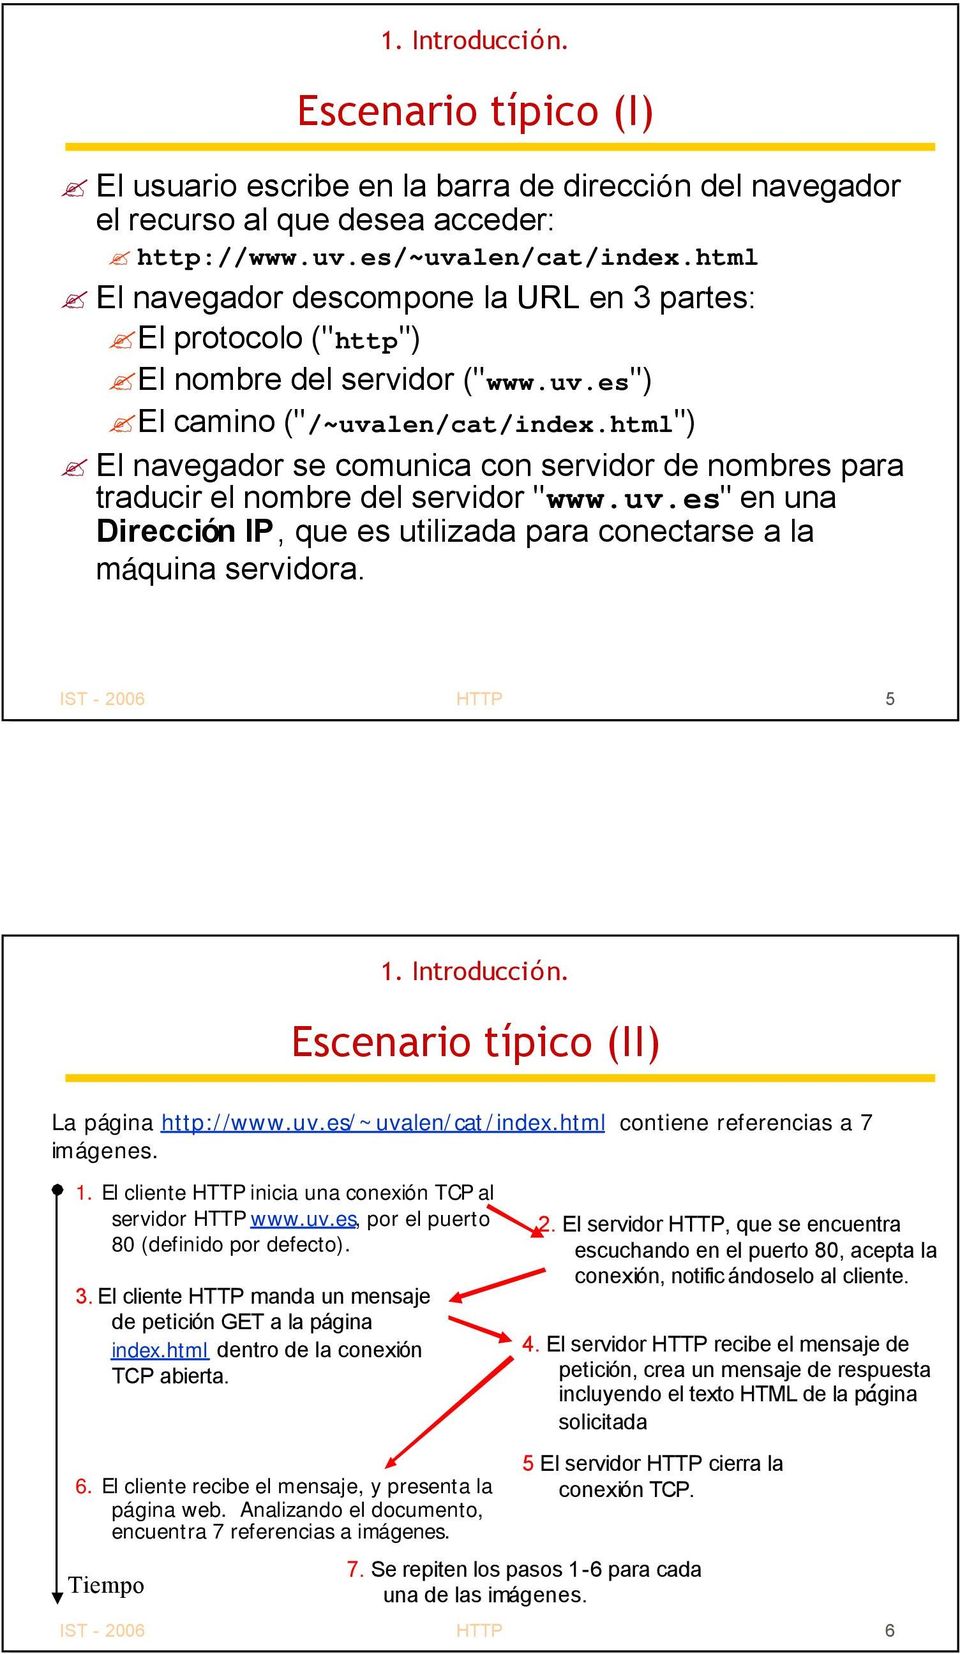 html") El navegador se comunica con servidor de nombres para traducir el nombre del servidor "www.uv.es" en una Dirección IP, que es utilizada para conectarse a la máquina servidora.